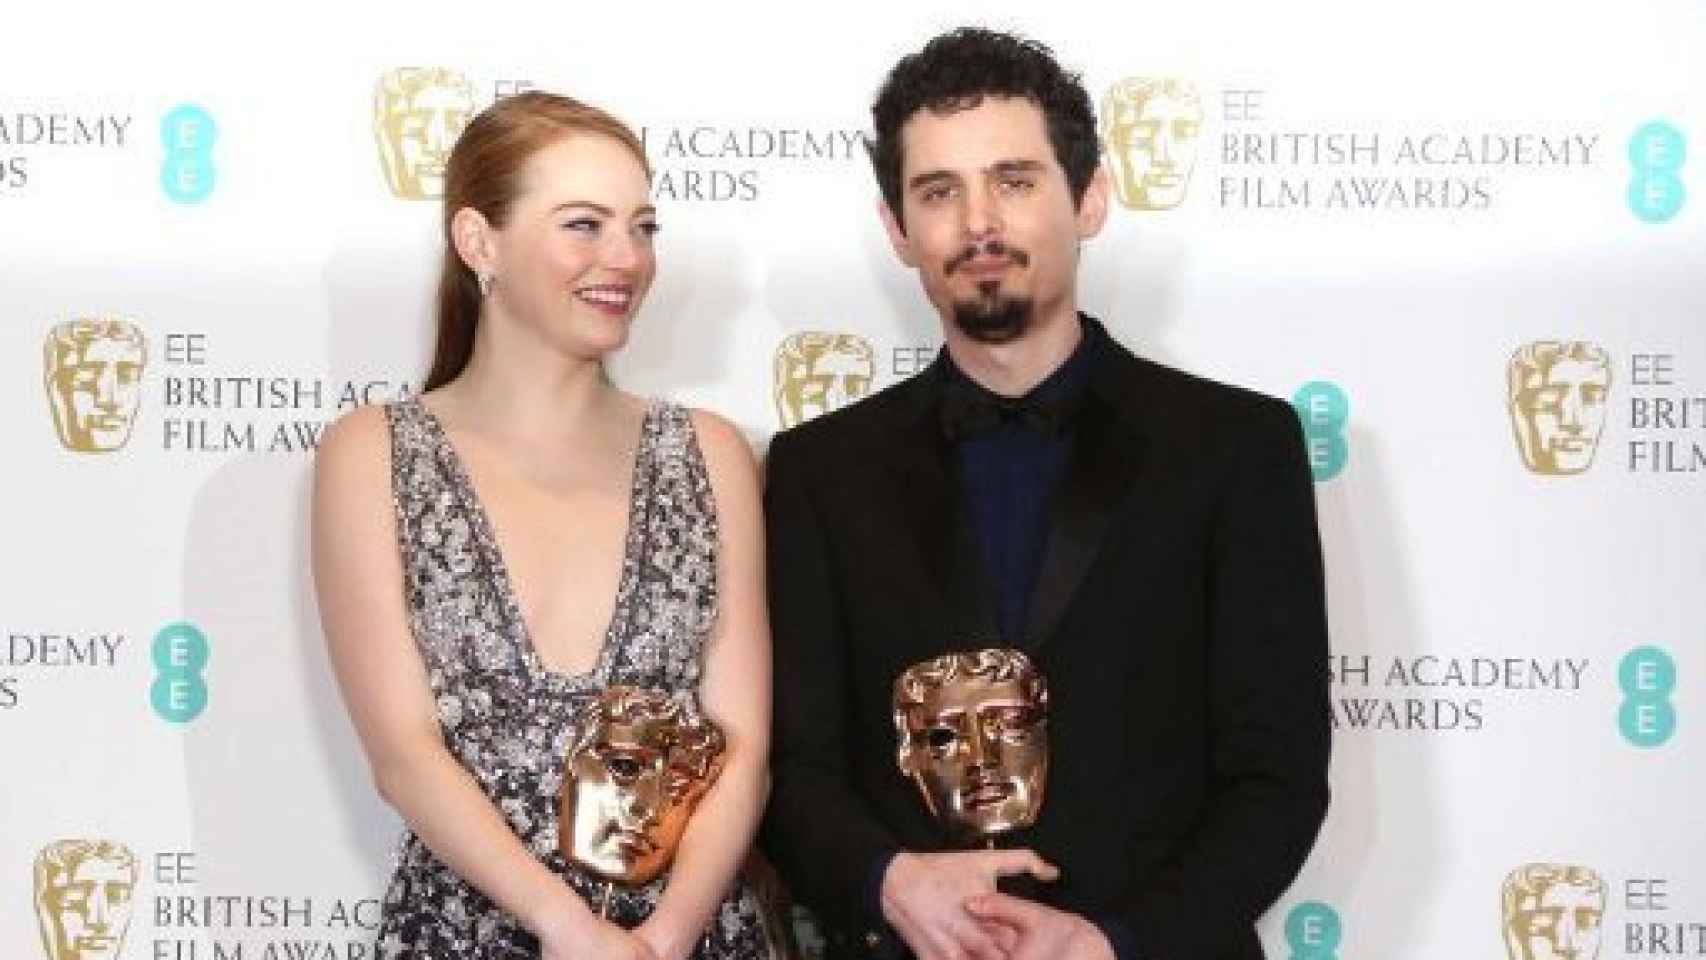 Image: La La Land mantiene su racha en los BAFTA